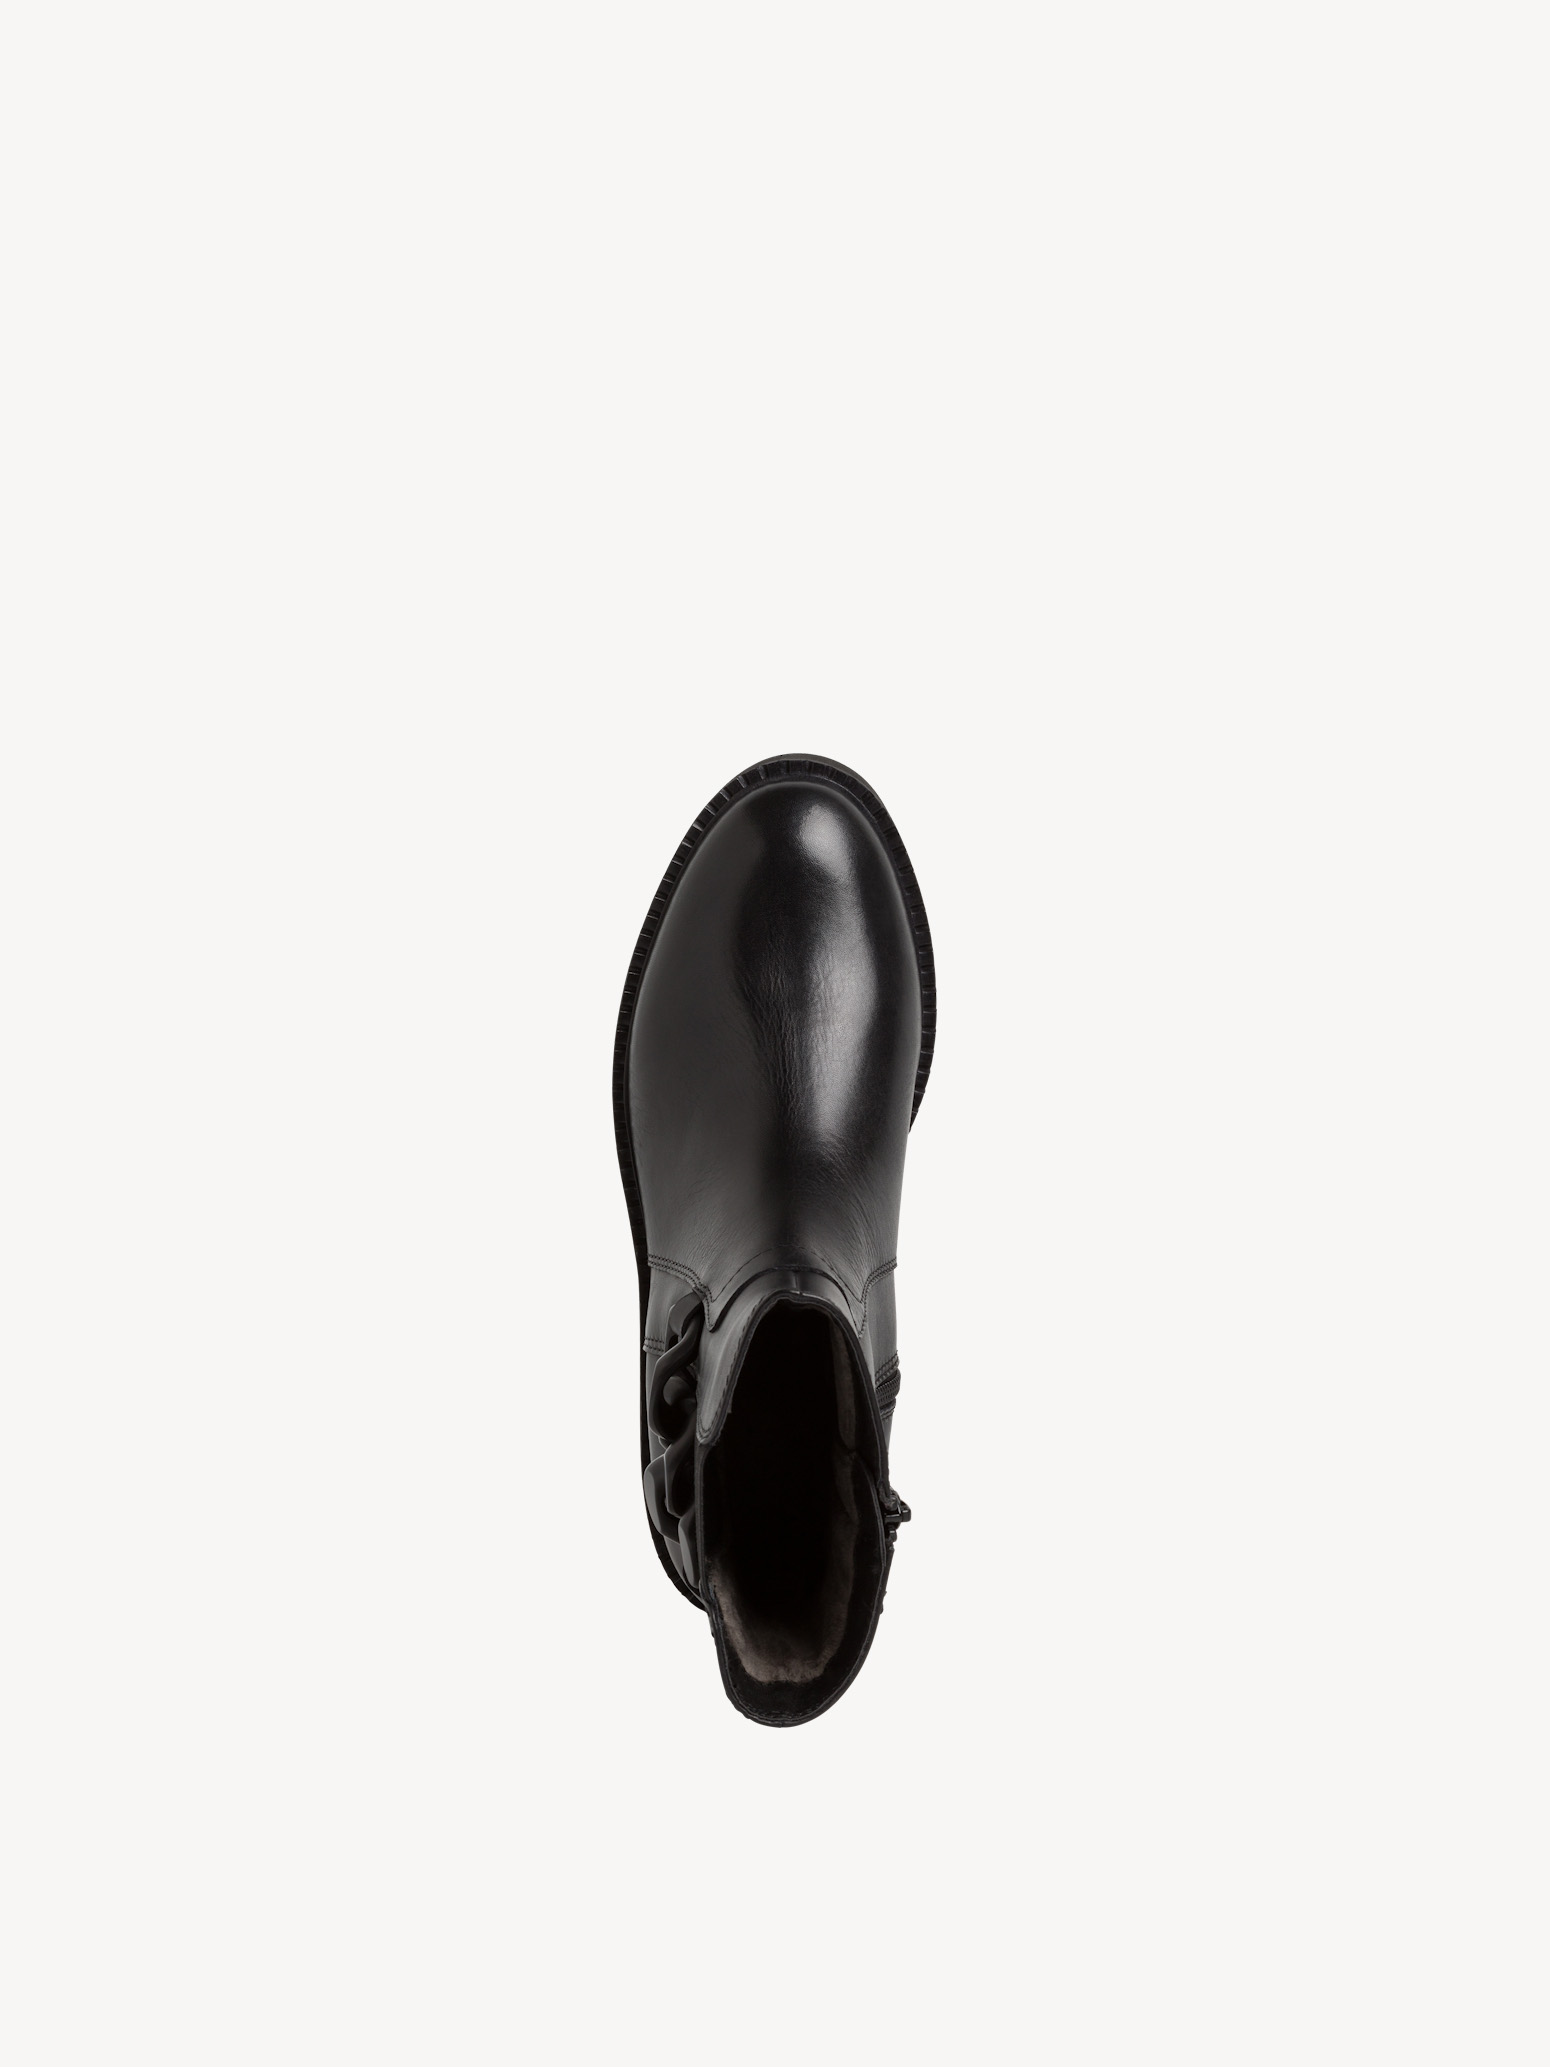 Leder Chelsea Boot - schwarz, BLACK NAPPA, hi-res